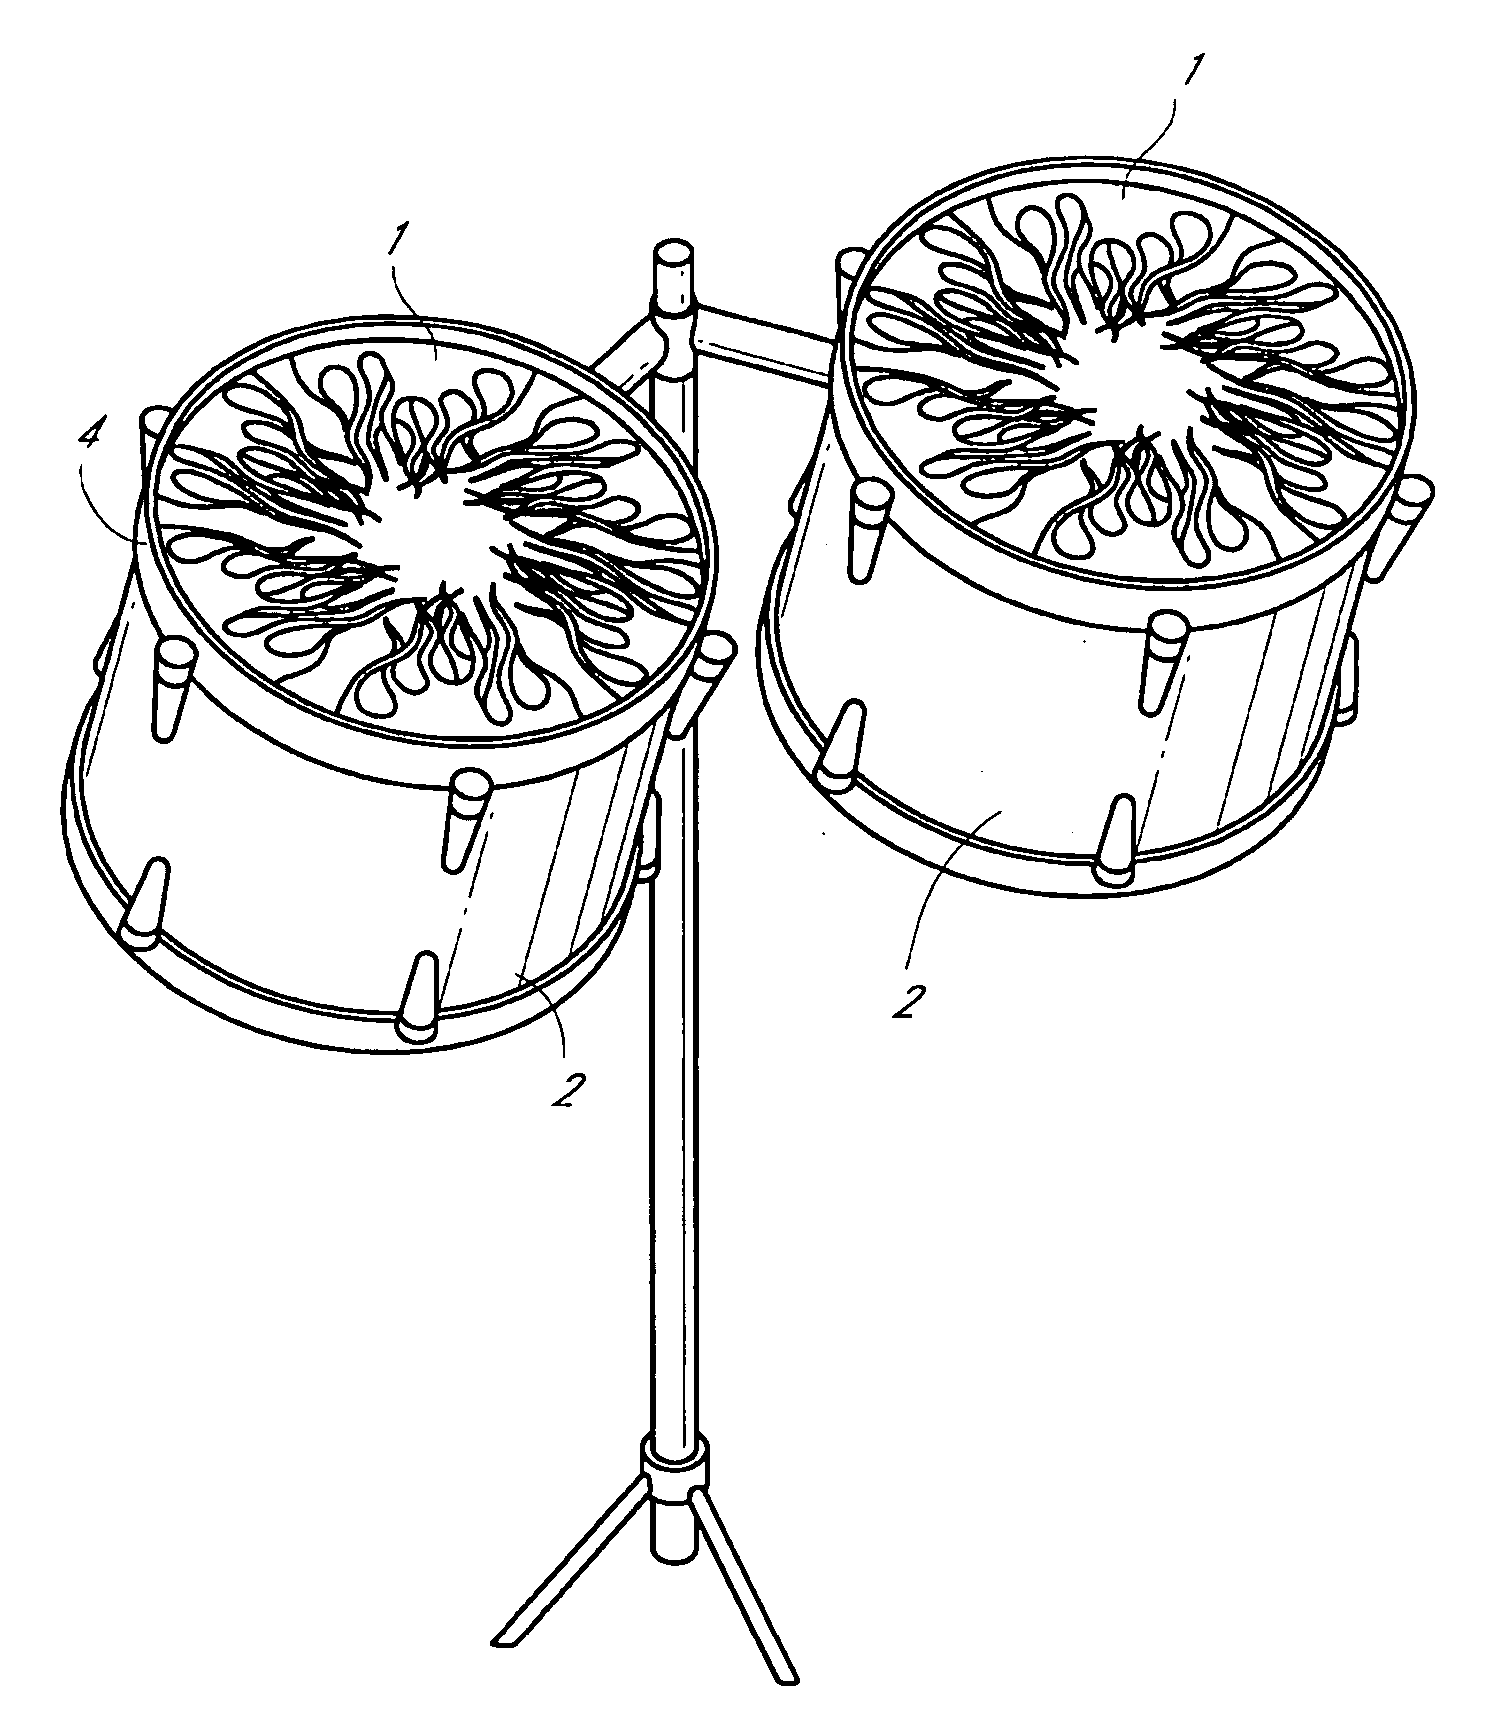 Drum damper systems